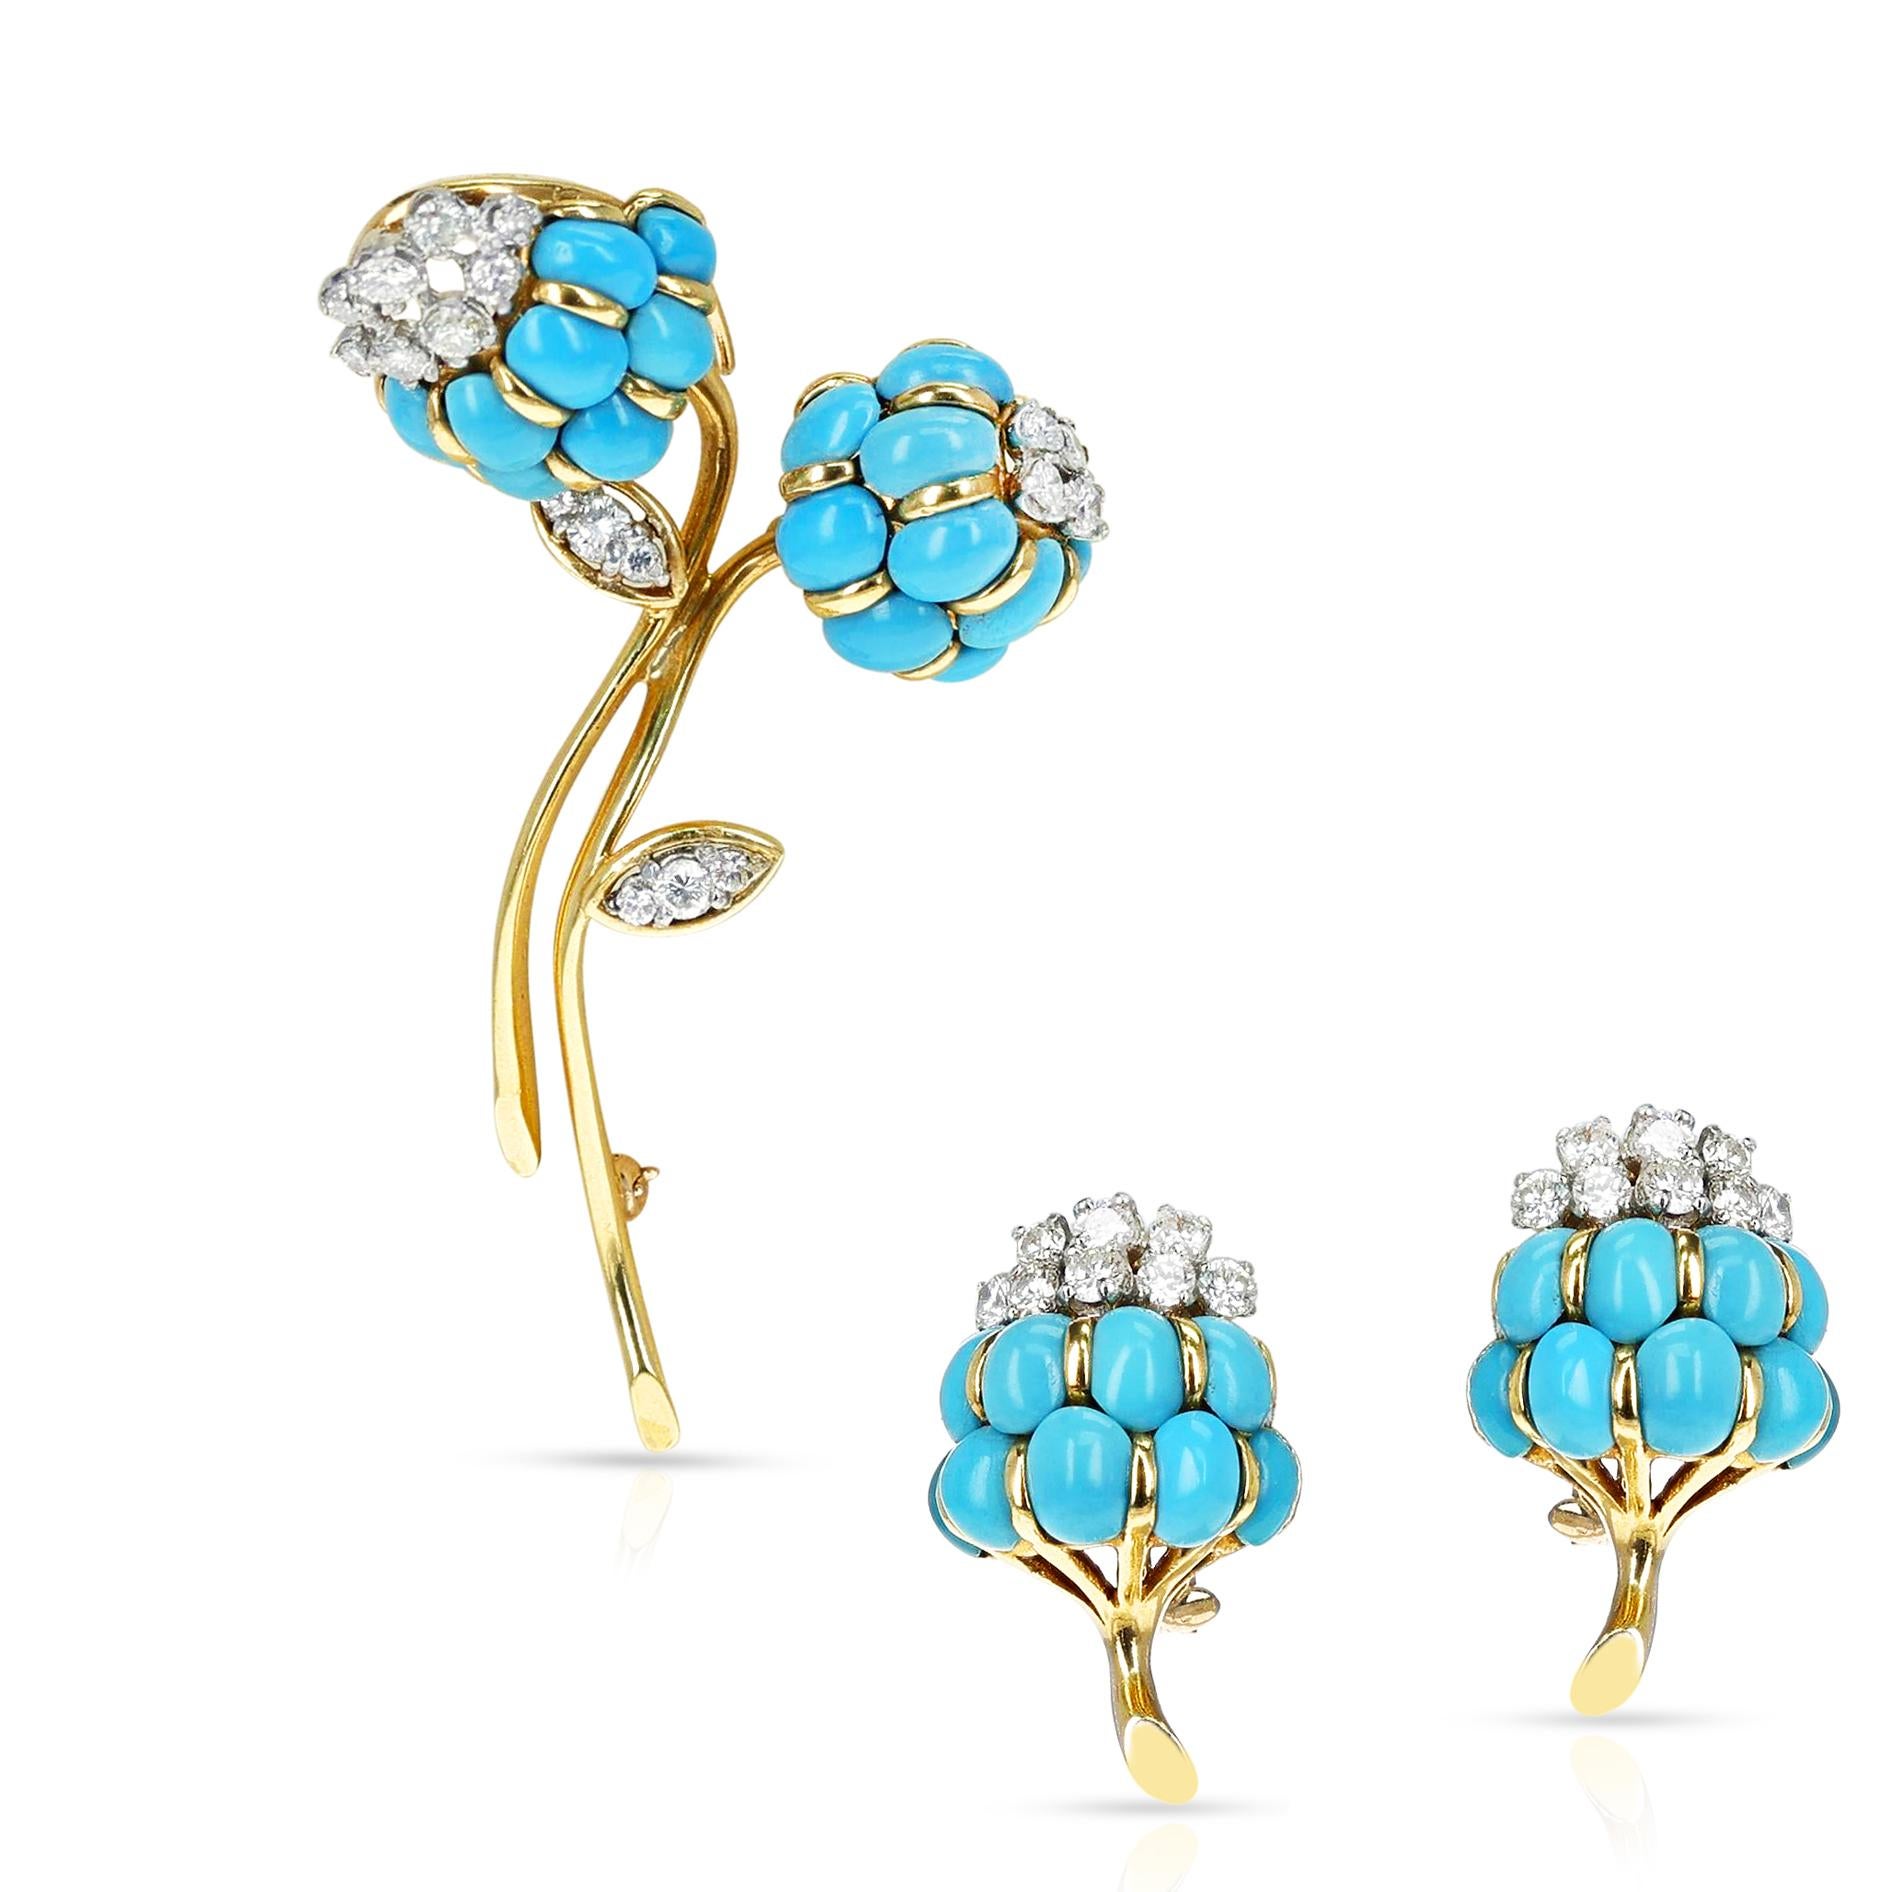 Van Cleef & Arpels Turquoise Cabochon & Diamond Flower Brooch & Earring Set, 18k 5